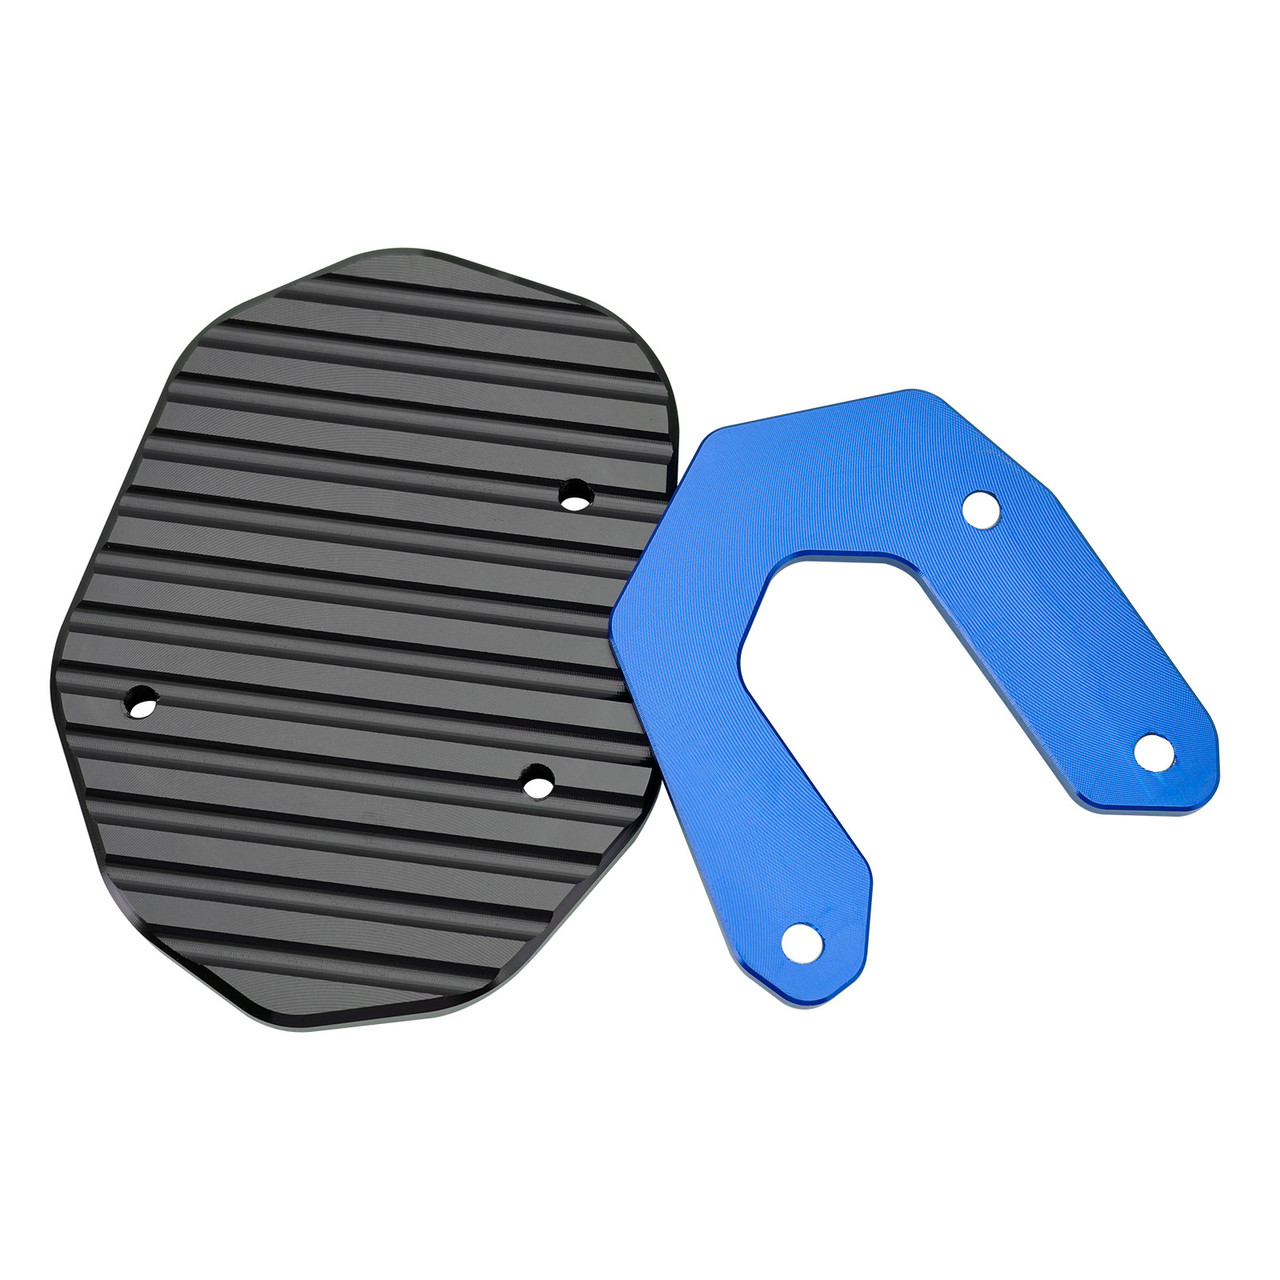 Kickstand Enlarge Plate Pad fit for Ducati Scrambler 400/800/1100 2015-2020 Blue